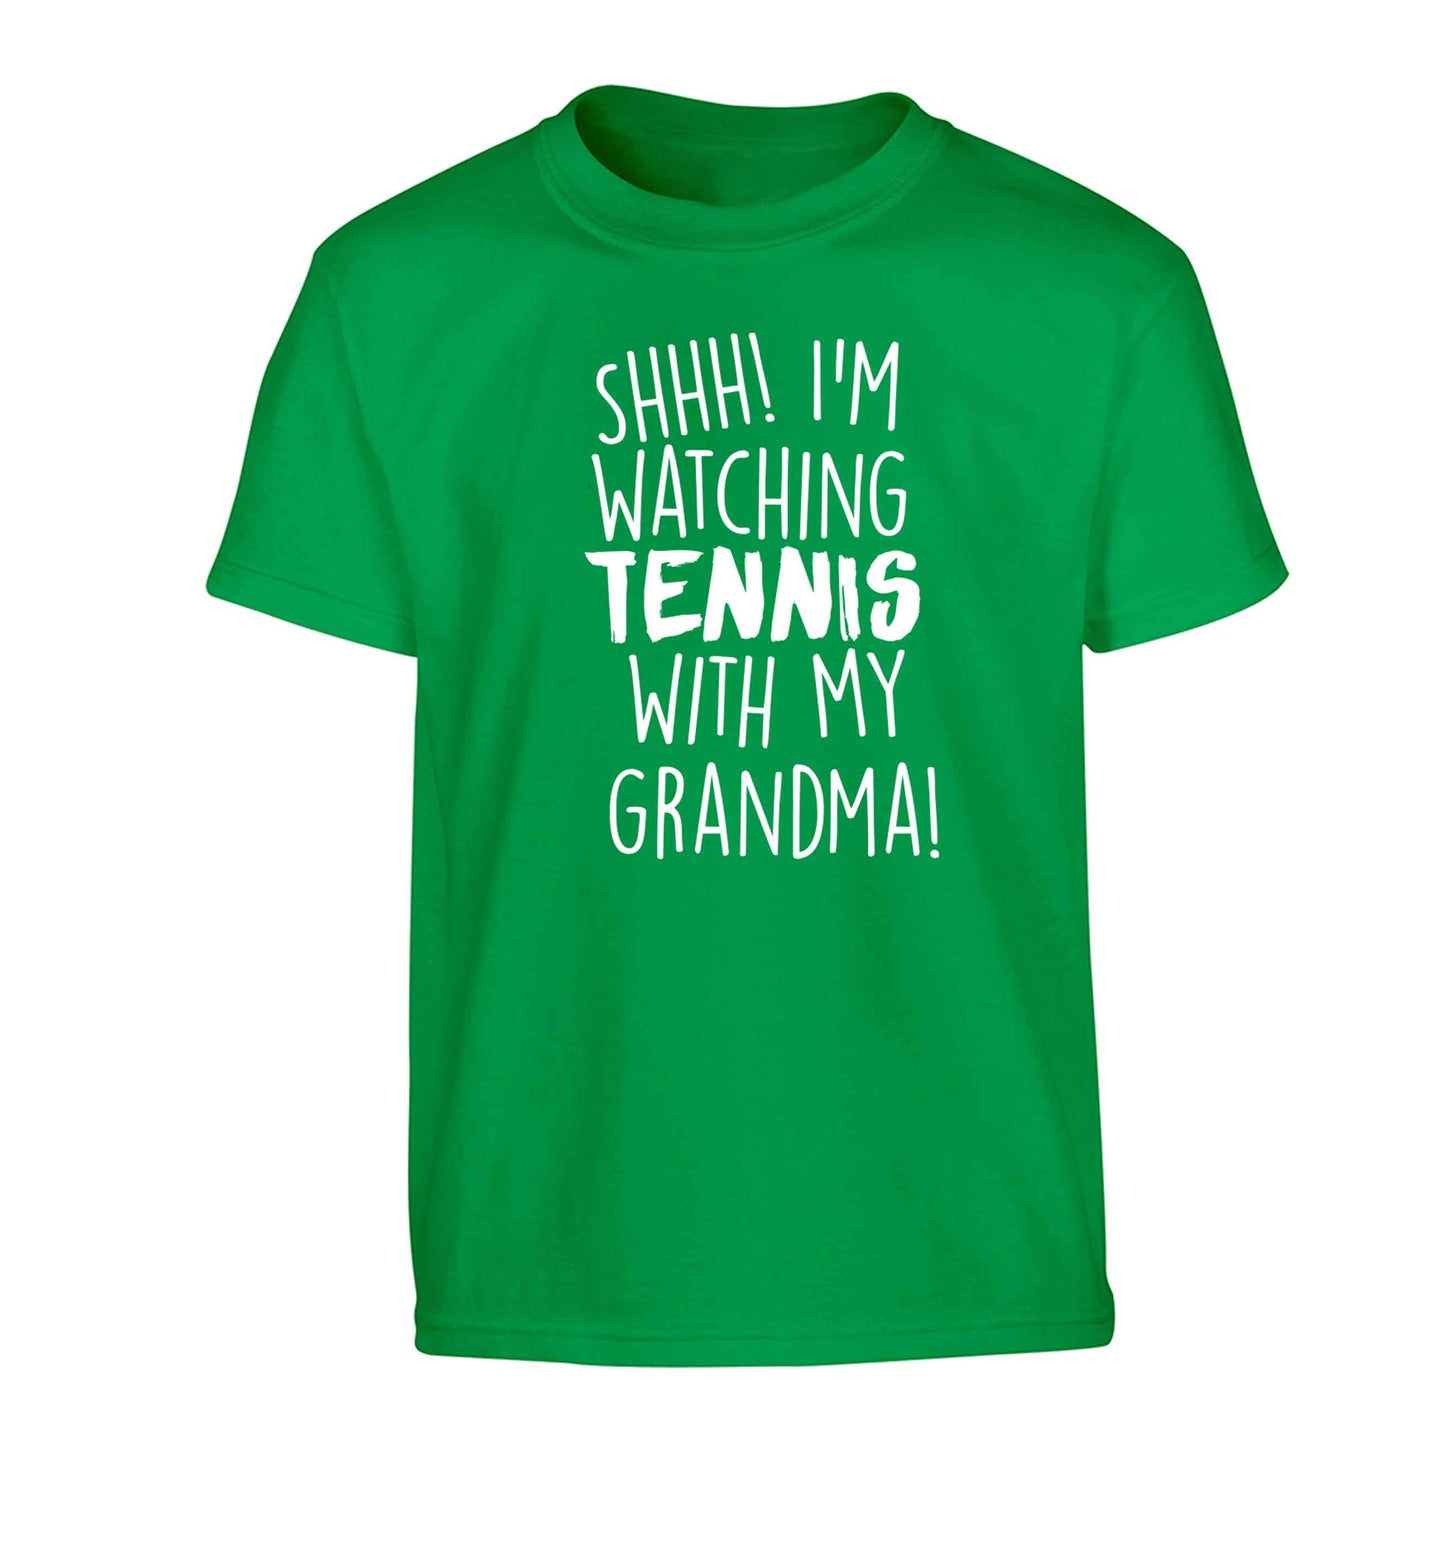 Shh! I'm watching tennis with my grandma! Children's green Tshirt 12-13 Years